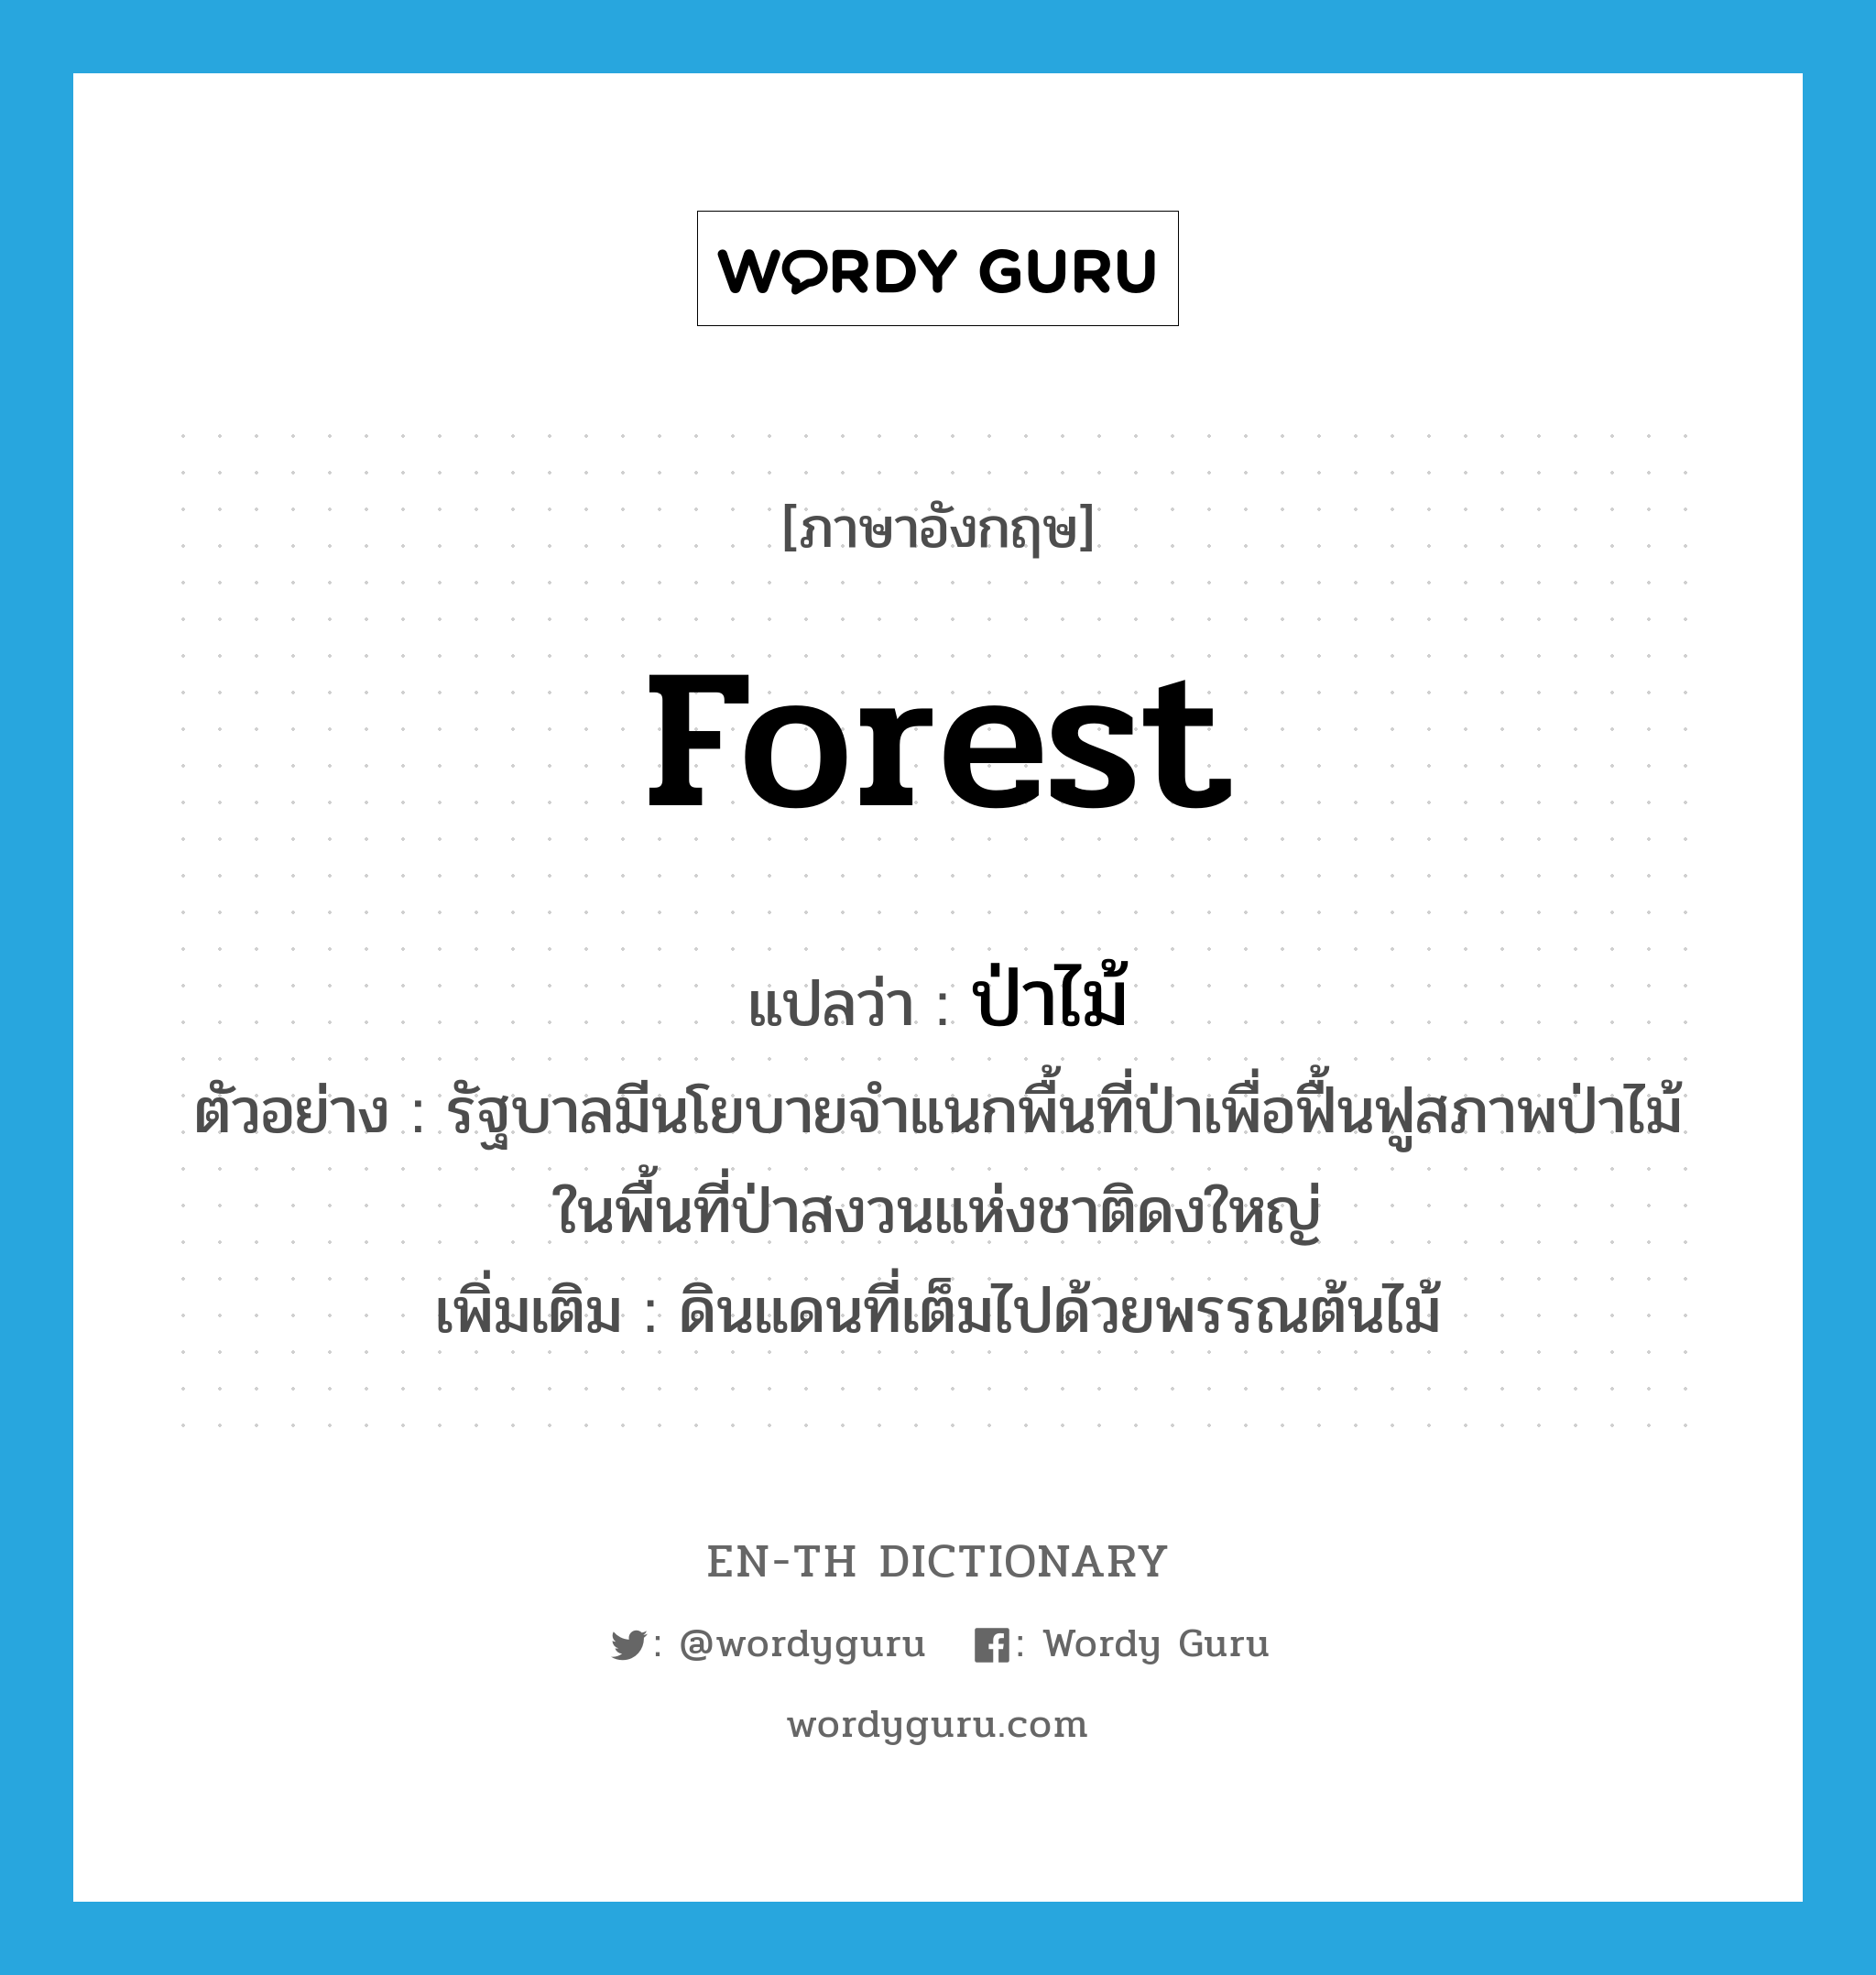 ป่าไม้ ภาษาอังกฤษ?, คำศัพท์ภาษาอังกฤษ ป่าไม้ แปลว่า forest ประเภท N ตัวอย่าง รัฐบาลมีนโยบายจำแนกพื้นที่ป่าเพื่อฟื้นฟูสภาพป่าไม้ในพื้นที่ป่าสงวนแห่งชาติดงใหญ่ เพิ่มเติม ดินแดนที่เต็มไปด้วยพรรณต้นไม้ หมวด N